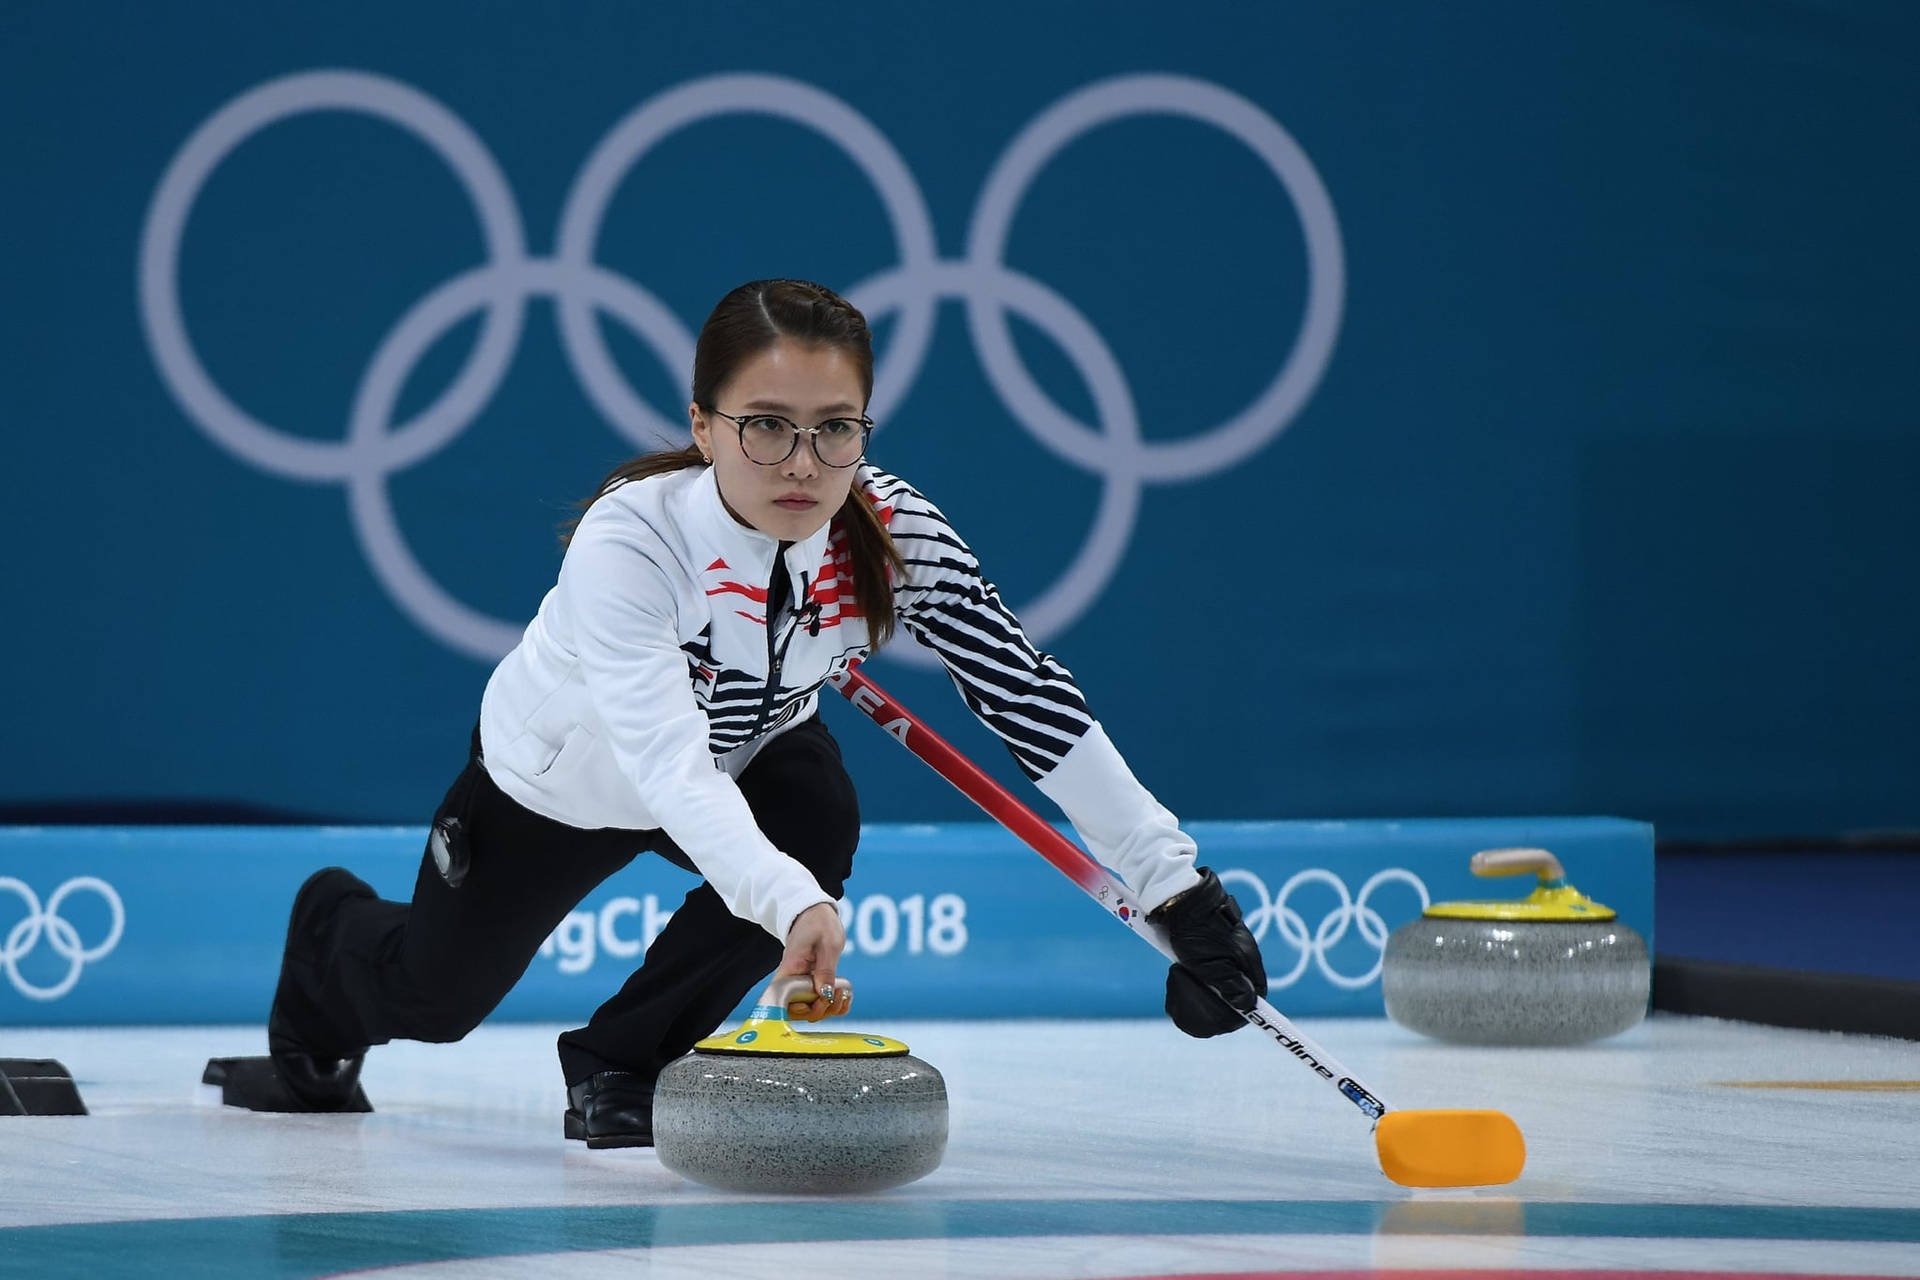 Weiblichecurling-athletin Bei Den Olympischen Winterspielen Wallpaper